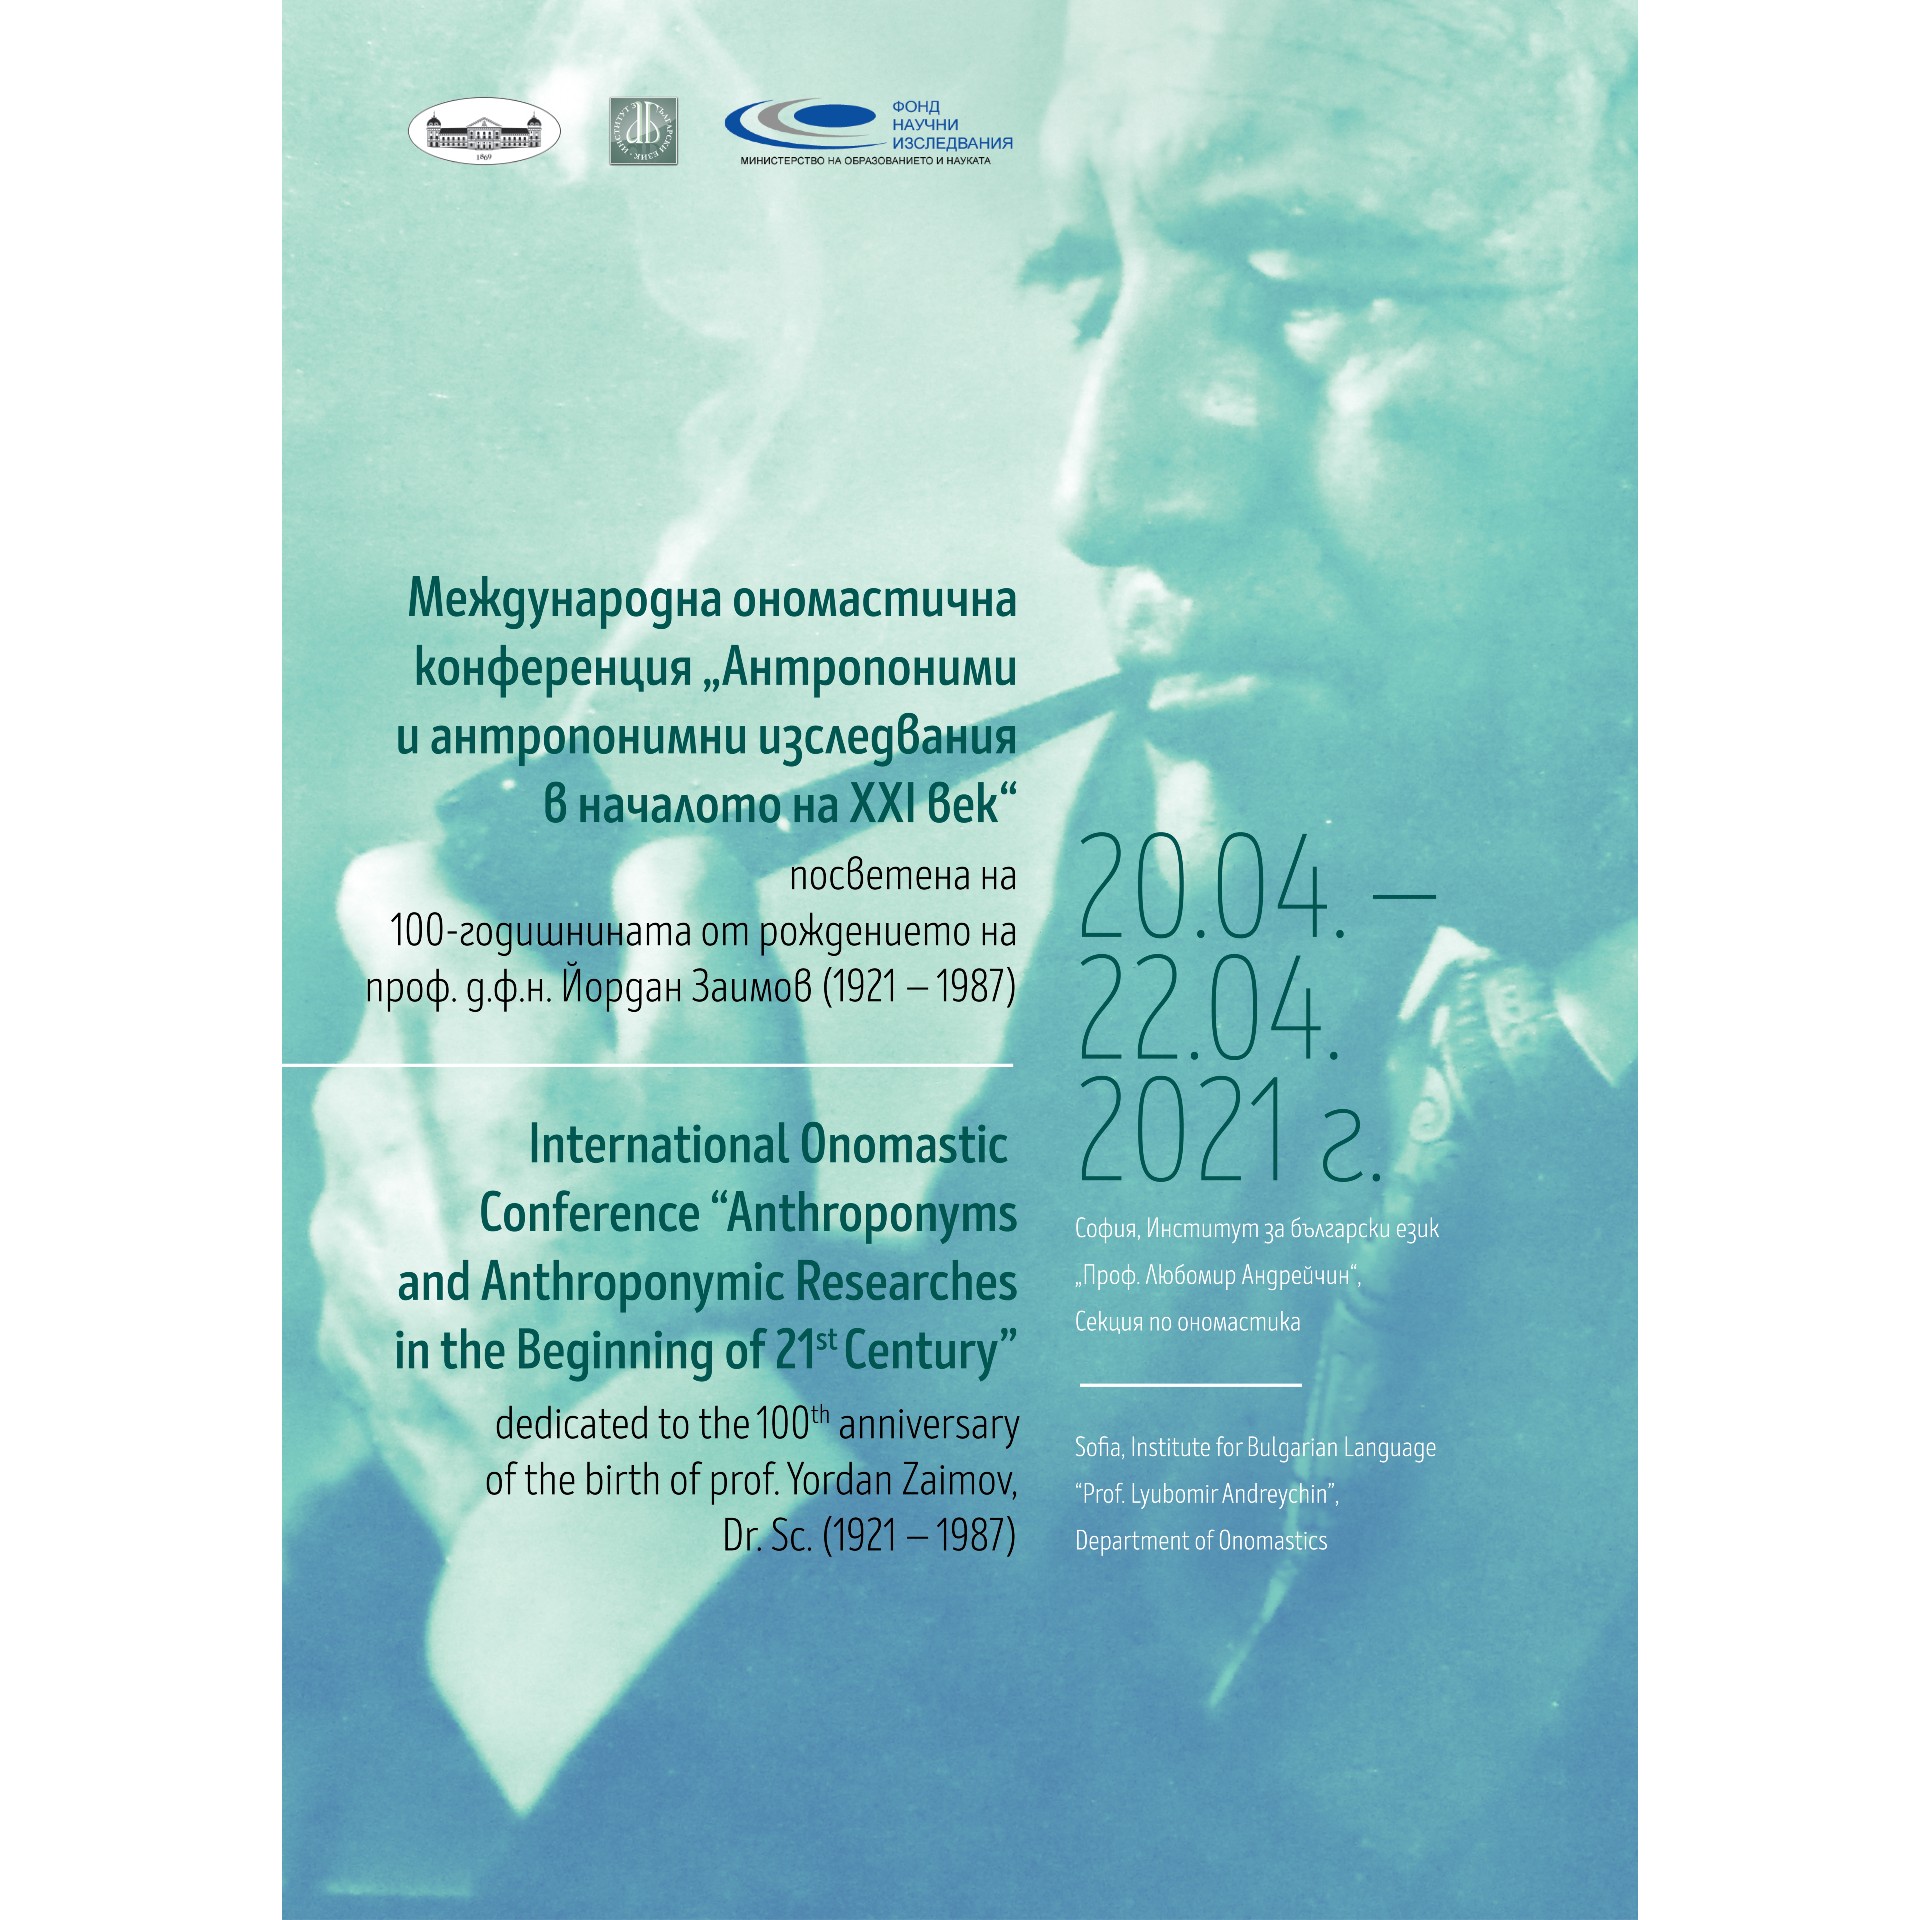 (Български) Ономастична конференция на тема „Антропоними и антропонимни изследвания в началото на XXI век“